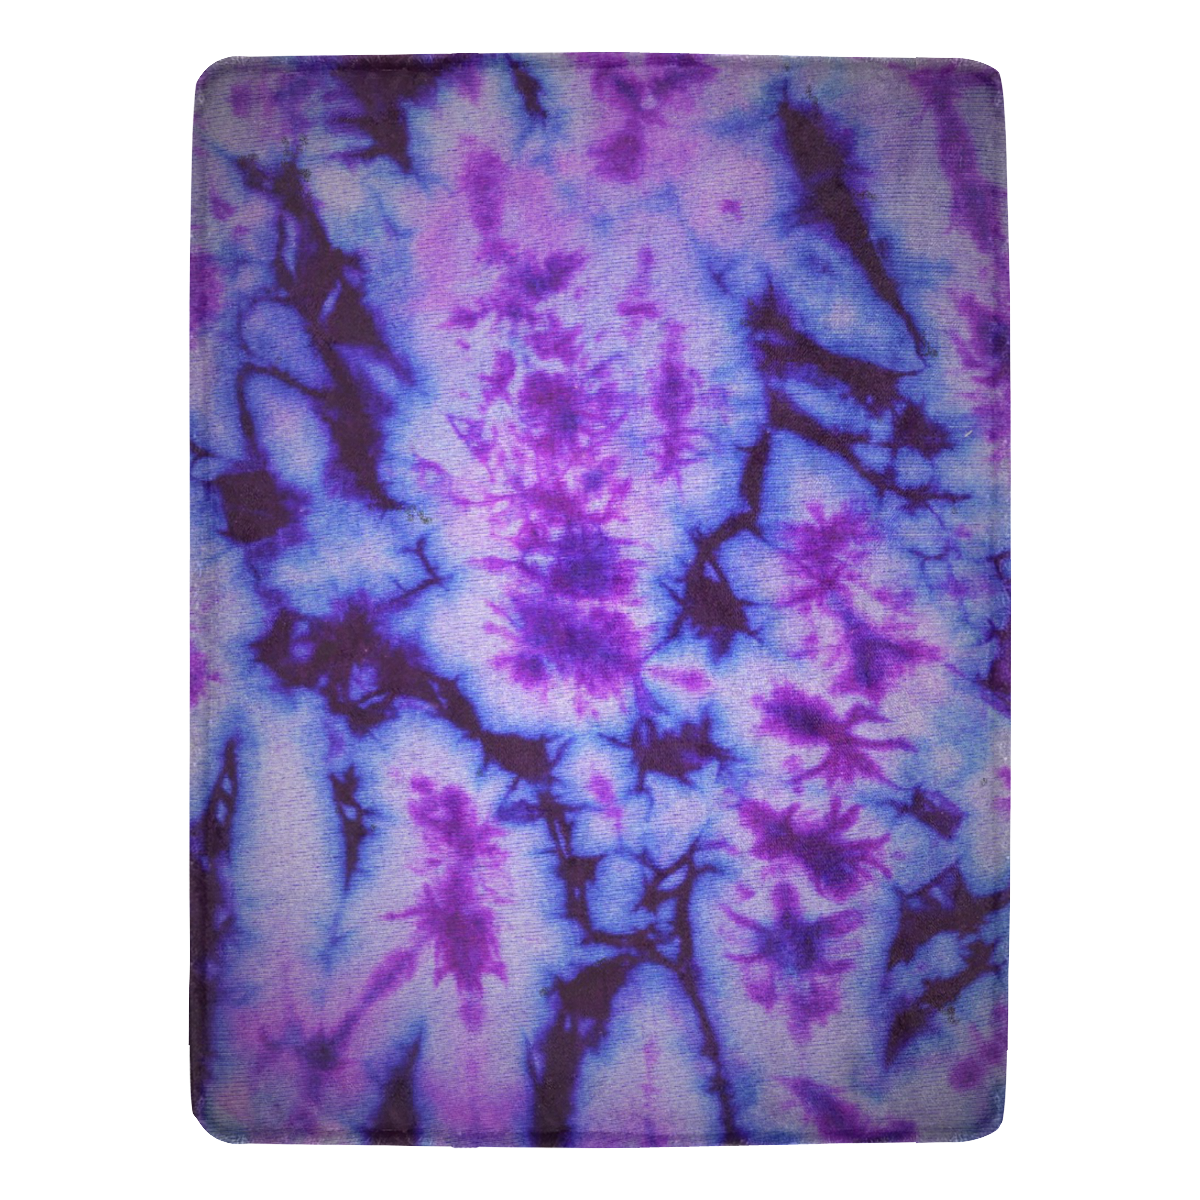 tie dye in blue and purple Ultra-Soft Micro Fleece Blanket 60"x80"